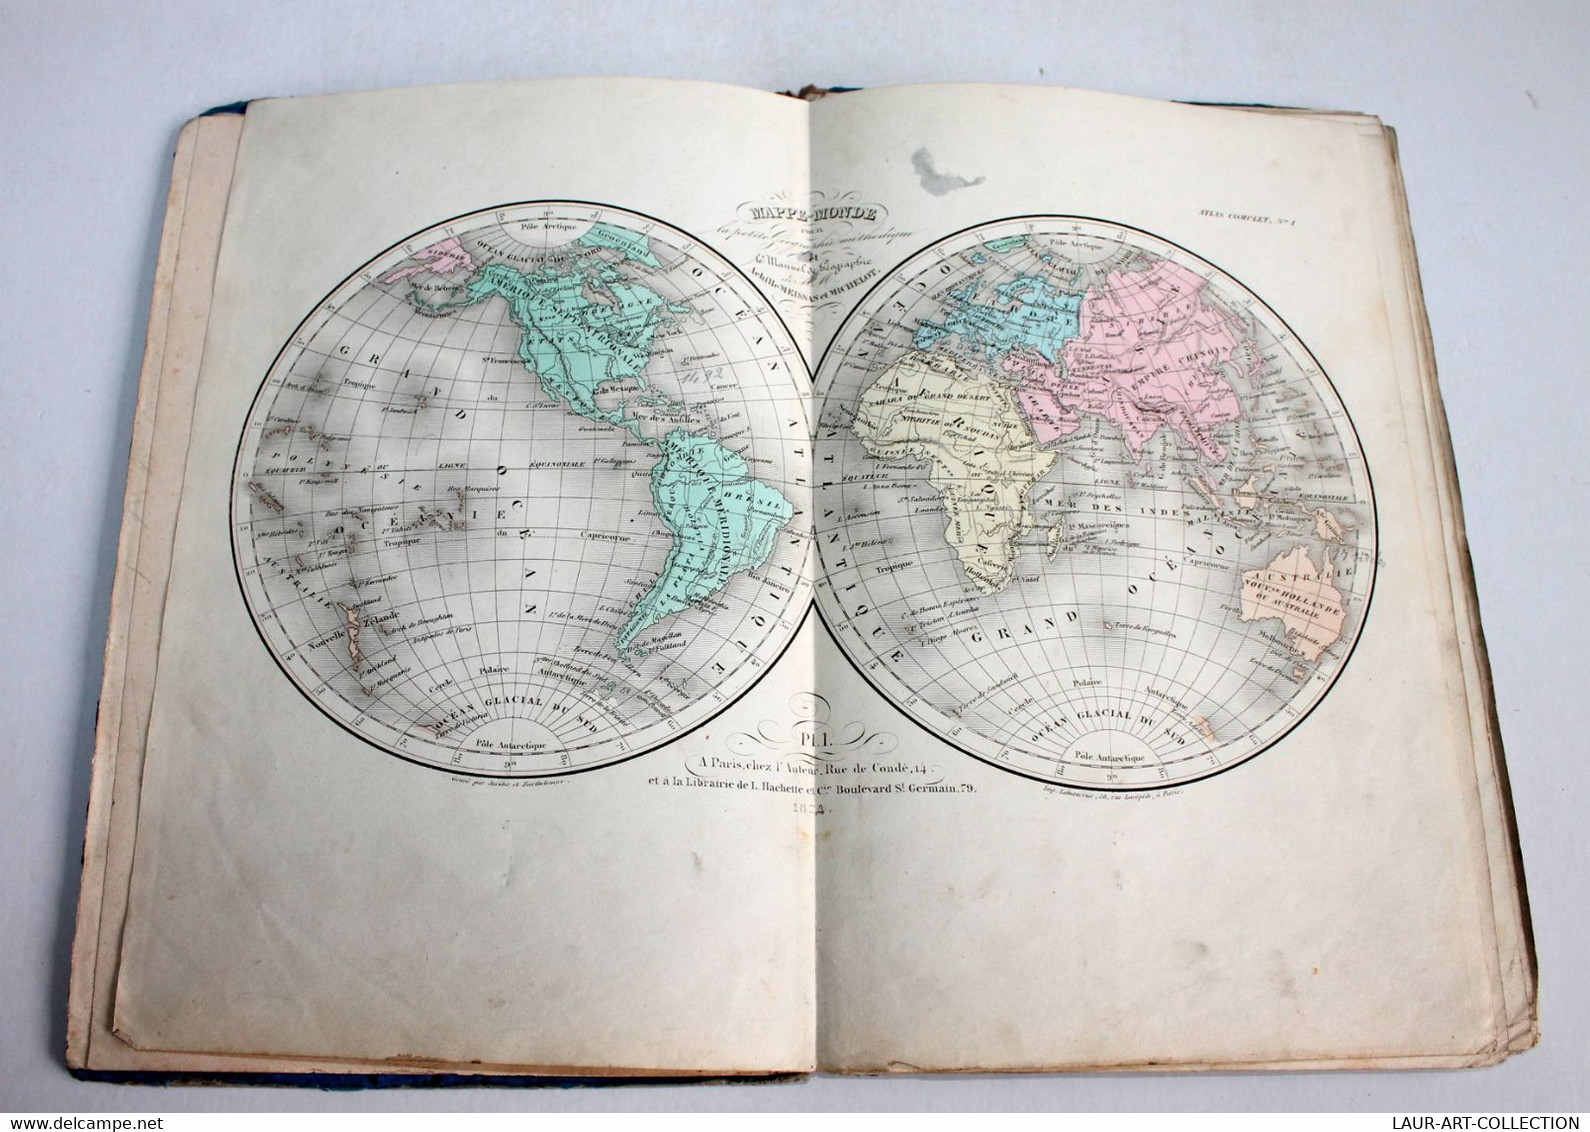 PETIT ATLAS ELEMENTAIRE De MEISSAS, MICHELOT GEOGRAPHIE METHODIQUE 1874 HACHETTE / ANCIEN LIVRE DE COLLECTION (2301.455) - Maps/Atlas